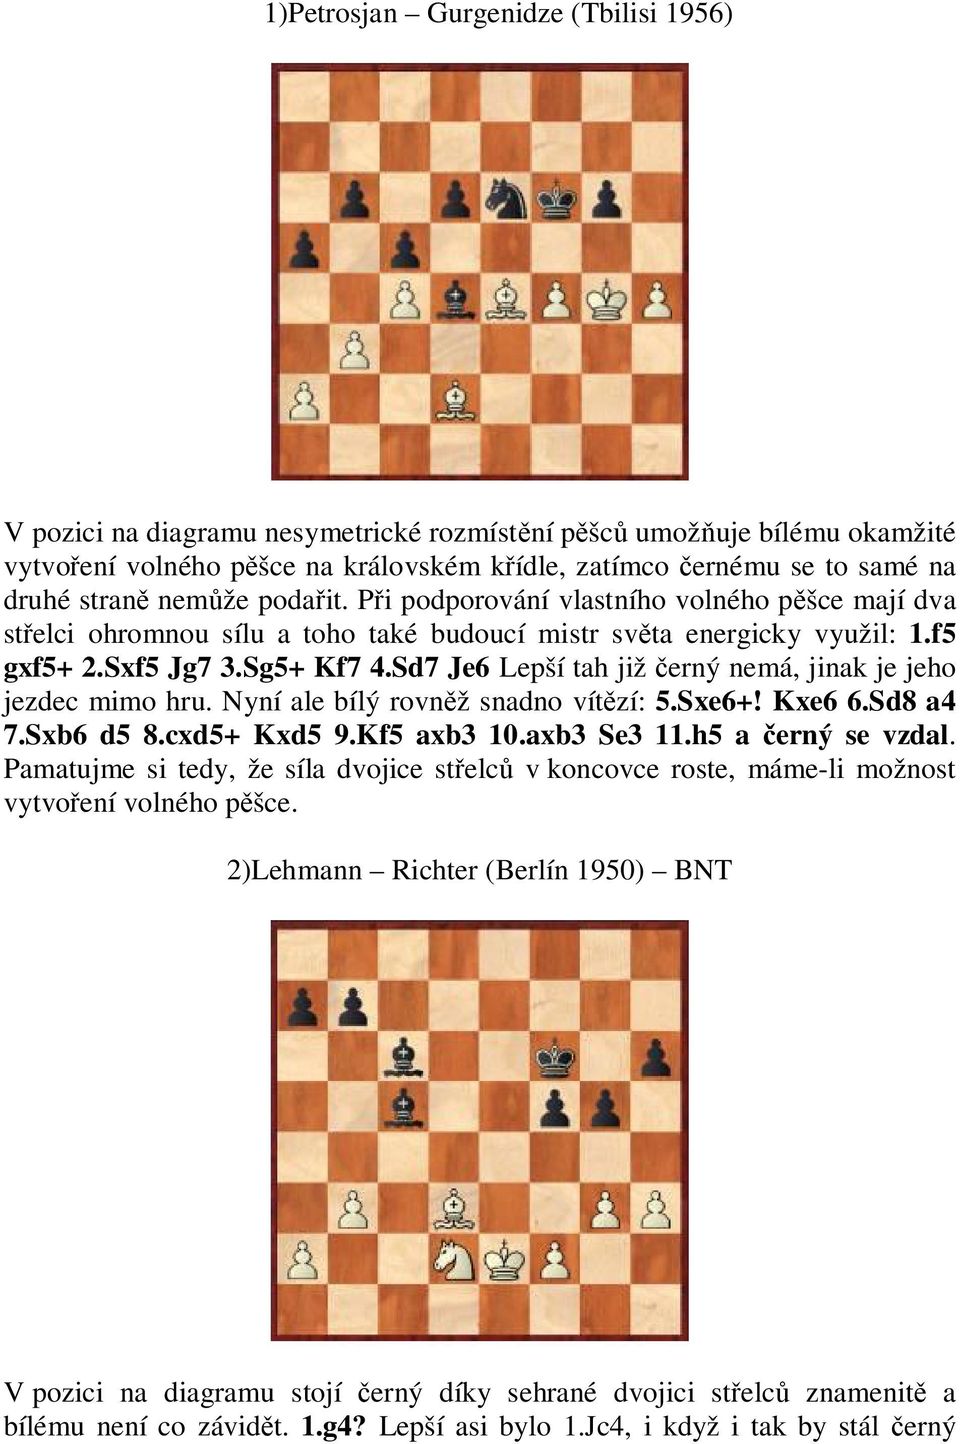 Sd7 Je6 Lepší tah již erný nemá, jinak je jeho jezdec mimo hru. Nyní ale bílý rovn ž snadno vít zí: 5.Sxe6+! Kxe6 6.Sd8 a4 7.Sxb6 d5 8.cxd5+ Kxd5 9.Kf5 axb3 10.axb3 Se3 11.h5 a erný se vzdal.